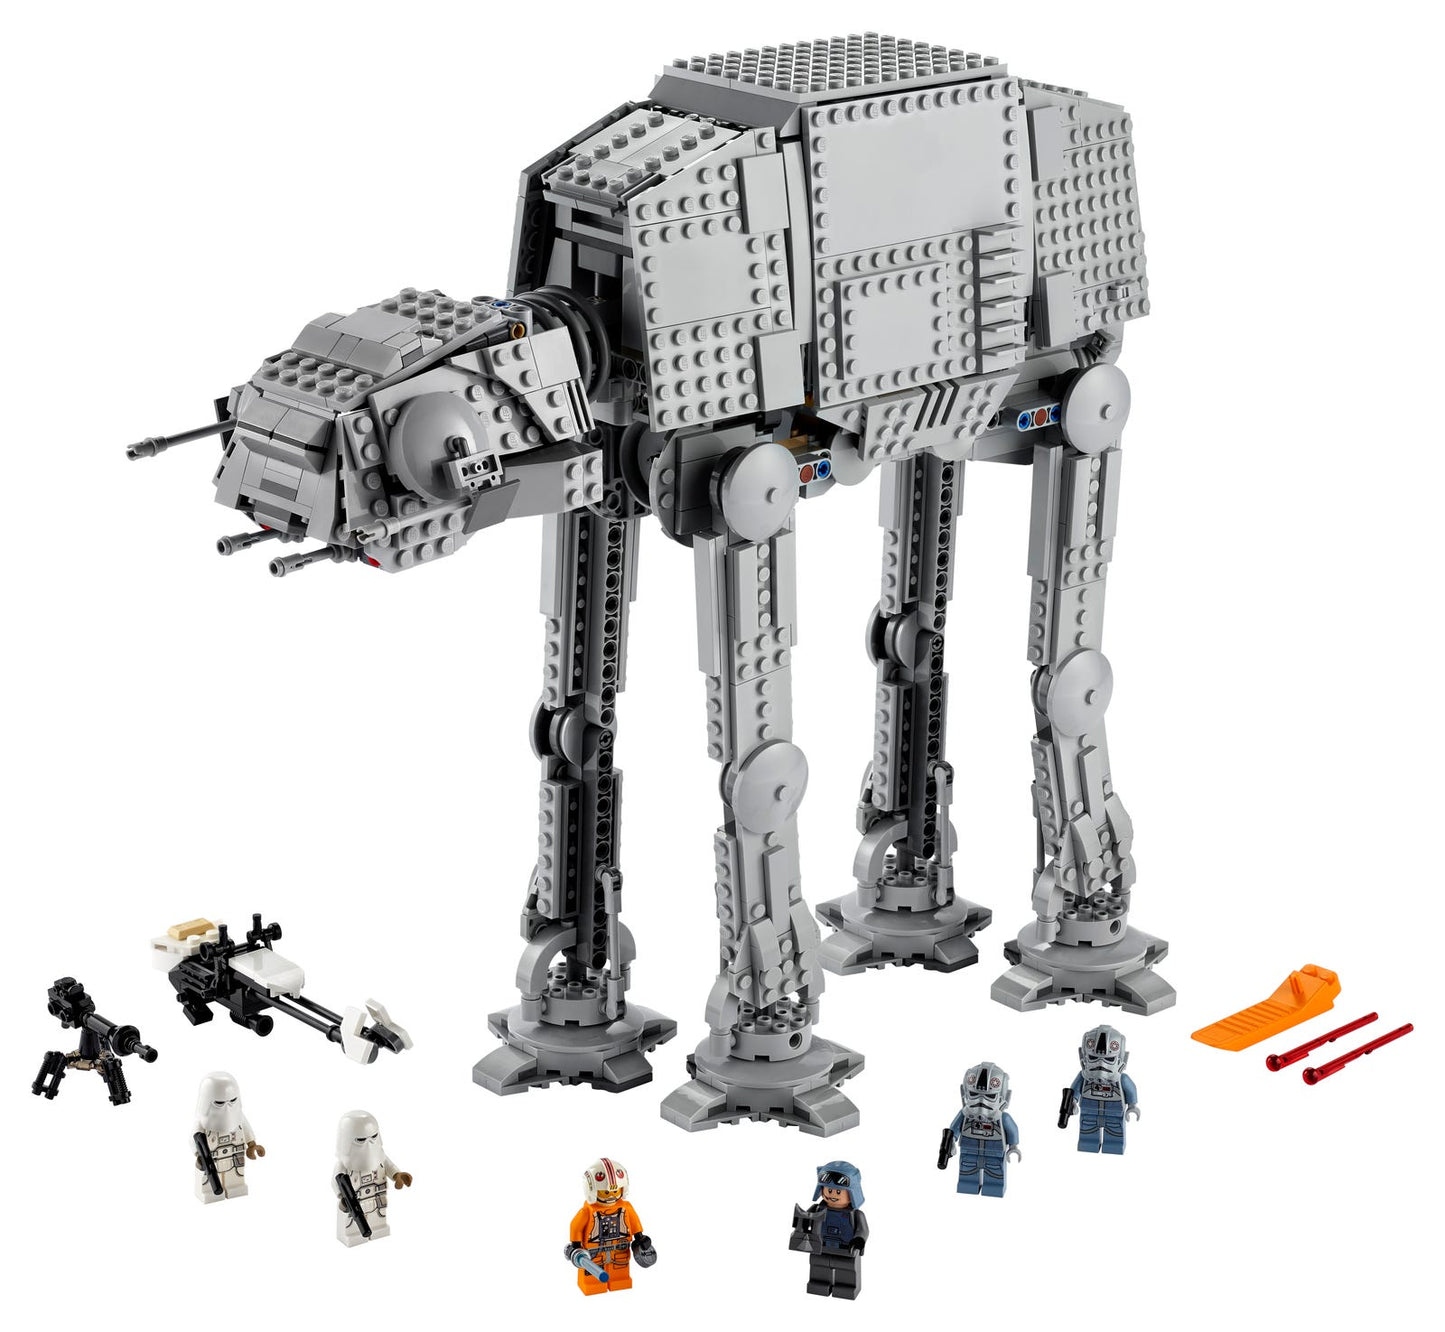 LEGO Star Wars AT-AT Star Wars 75288